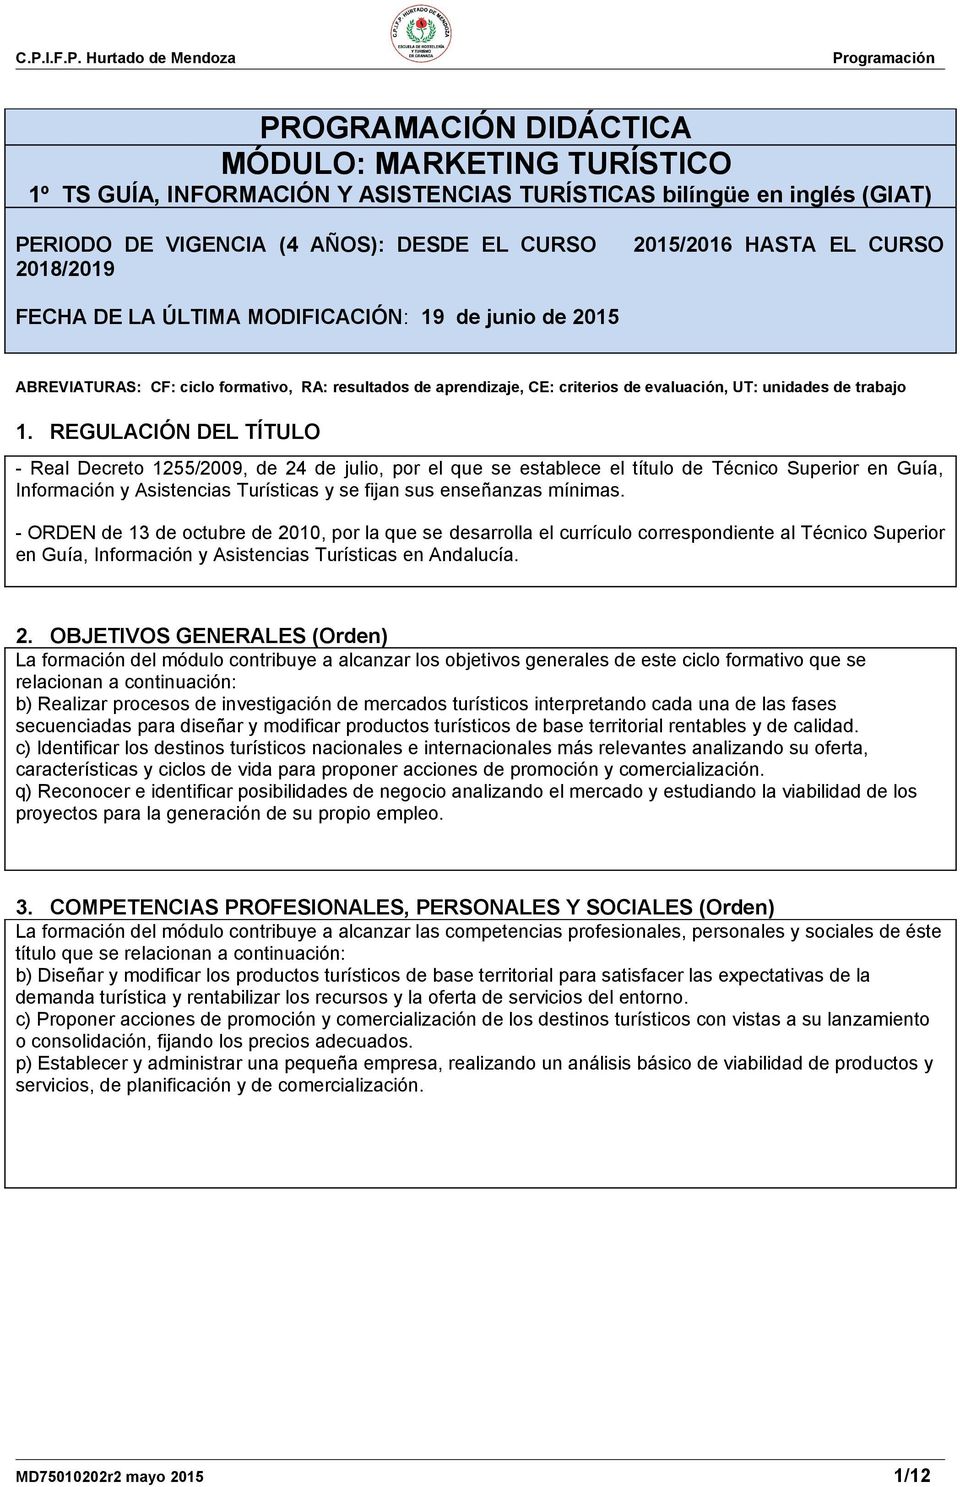 REGULACIÓN DEL TÍTULO - Real Decreto 1255/2009, de 24 de julio, por el que se establece el título de Técnico Superior en Guía, Información y Asistencias Turísticas y se fijan sus enseñanzas mínimas.